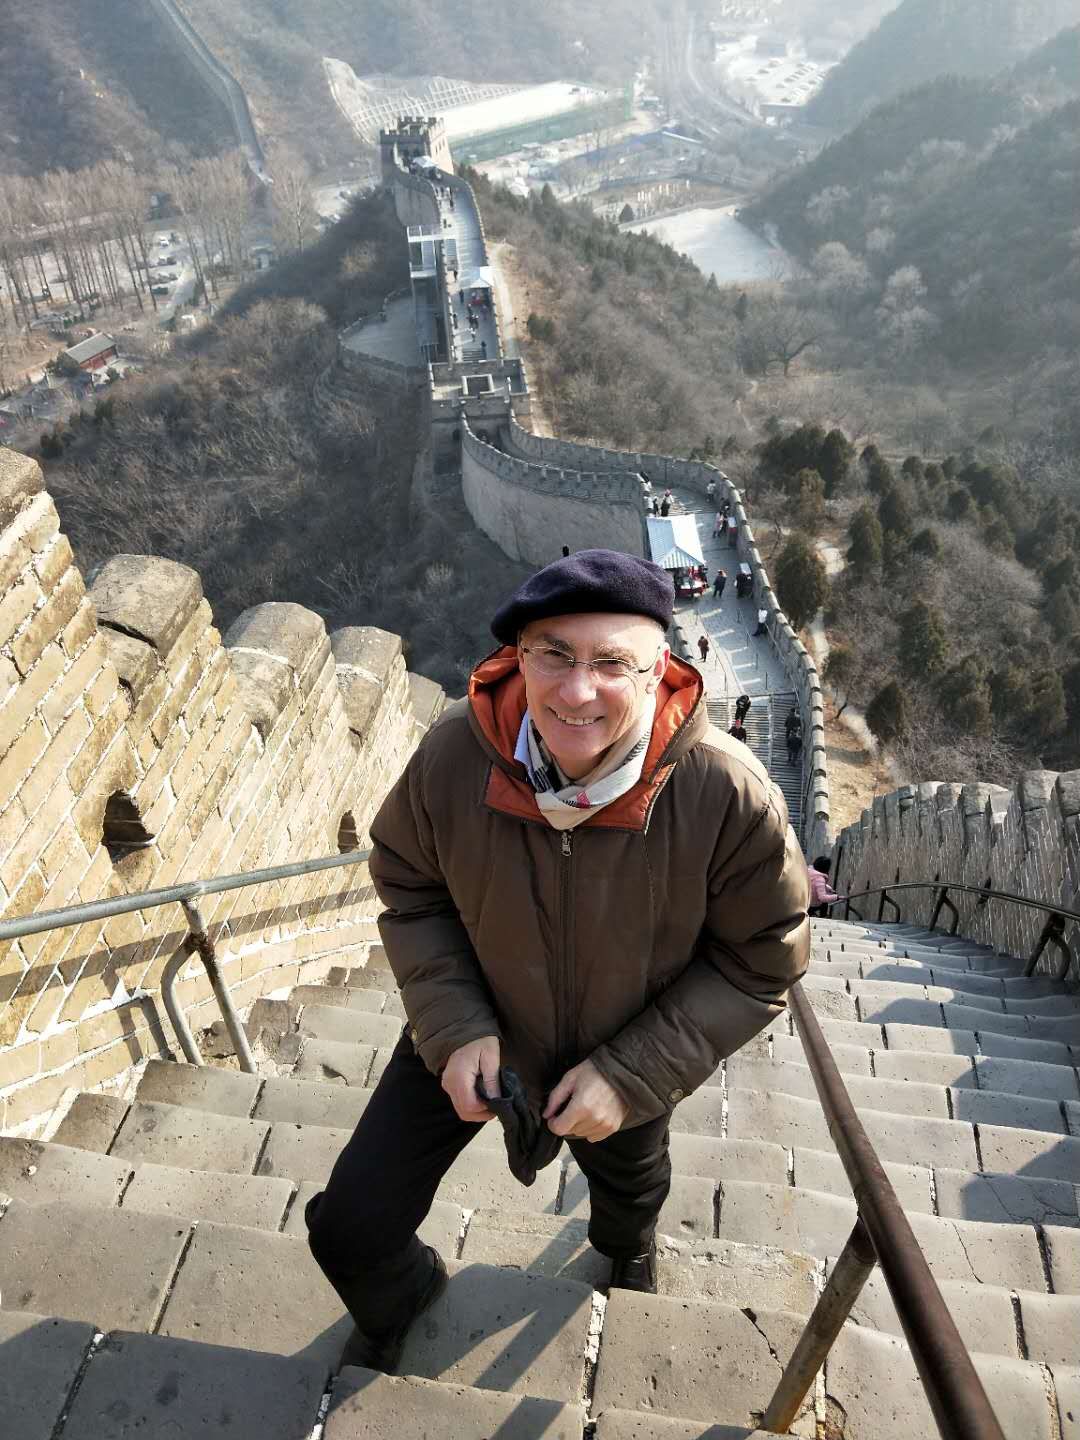 爬长城 - Climbing the Great Wall